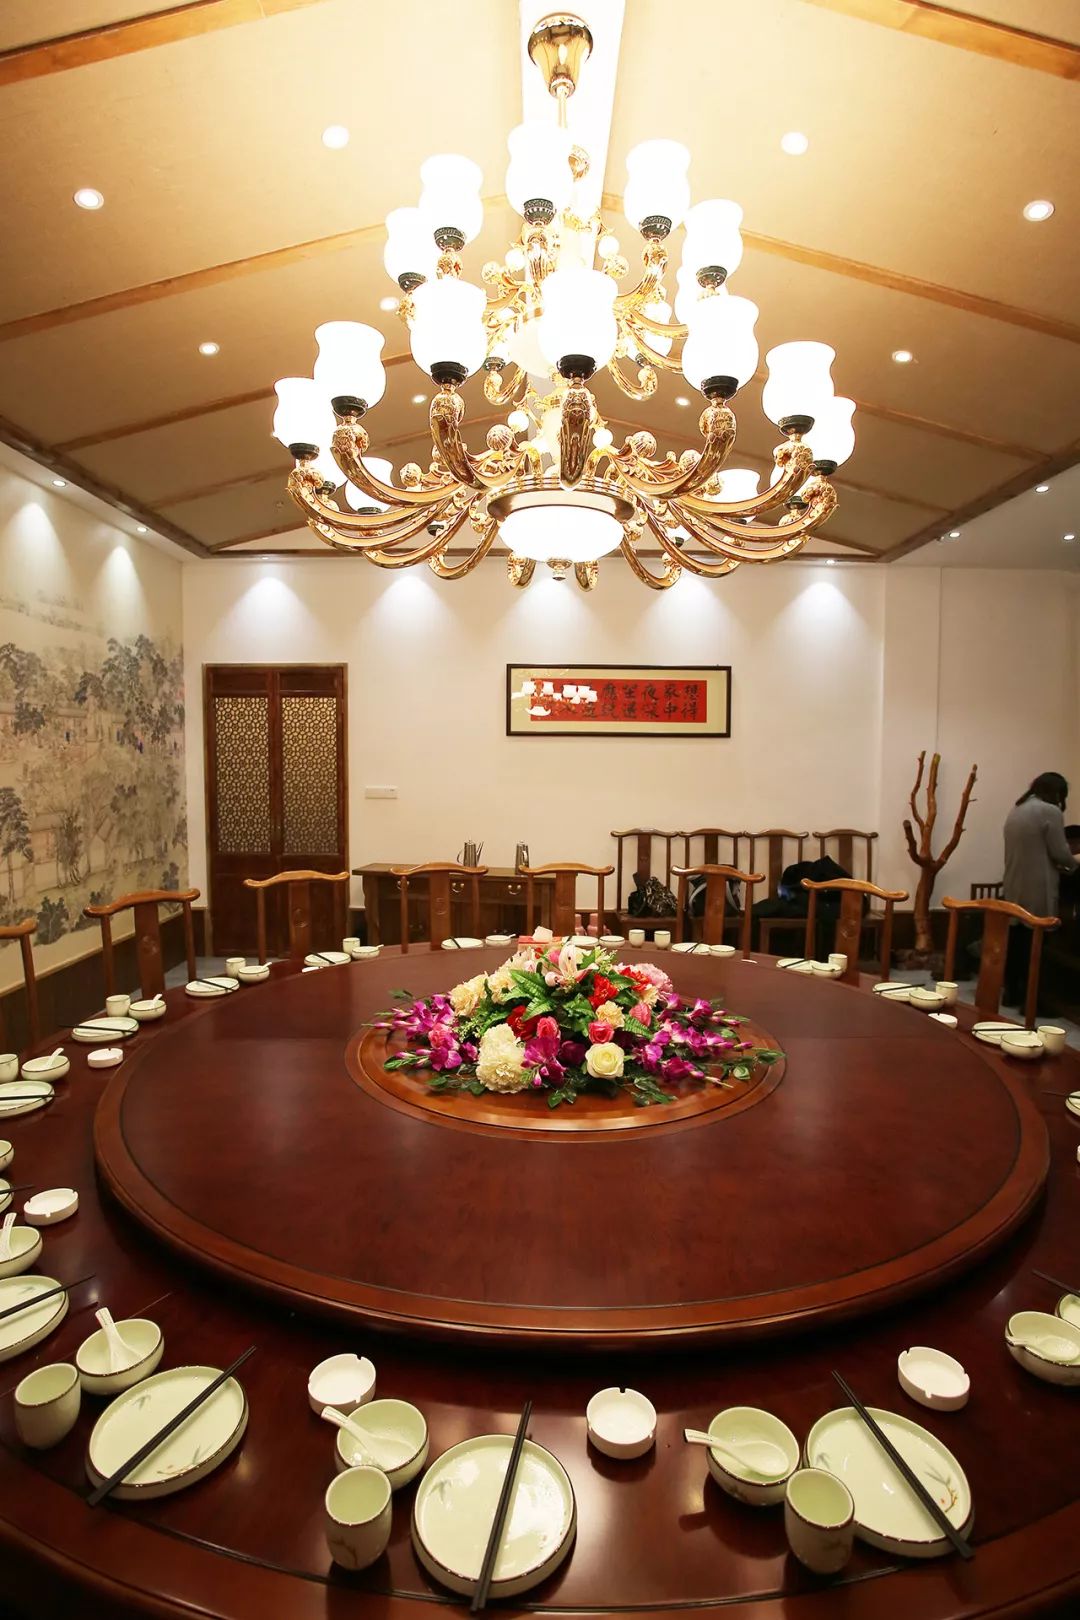 徐州人的宴客厅在北区崛起中国烹饪大师坐镇传承徐州老味道